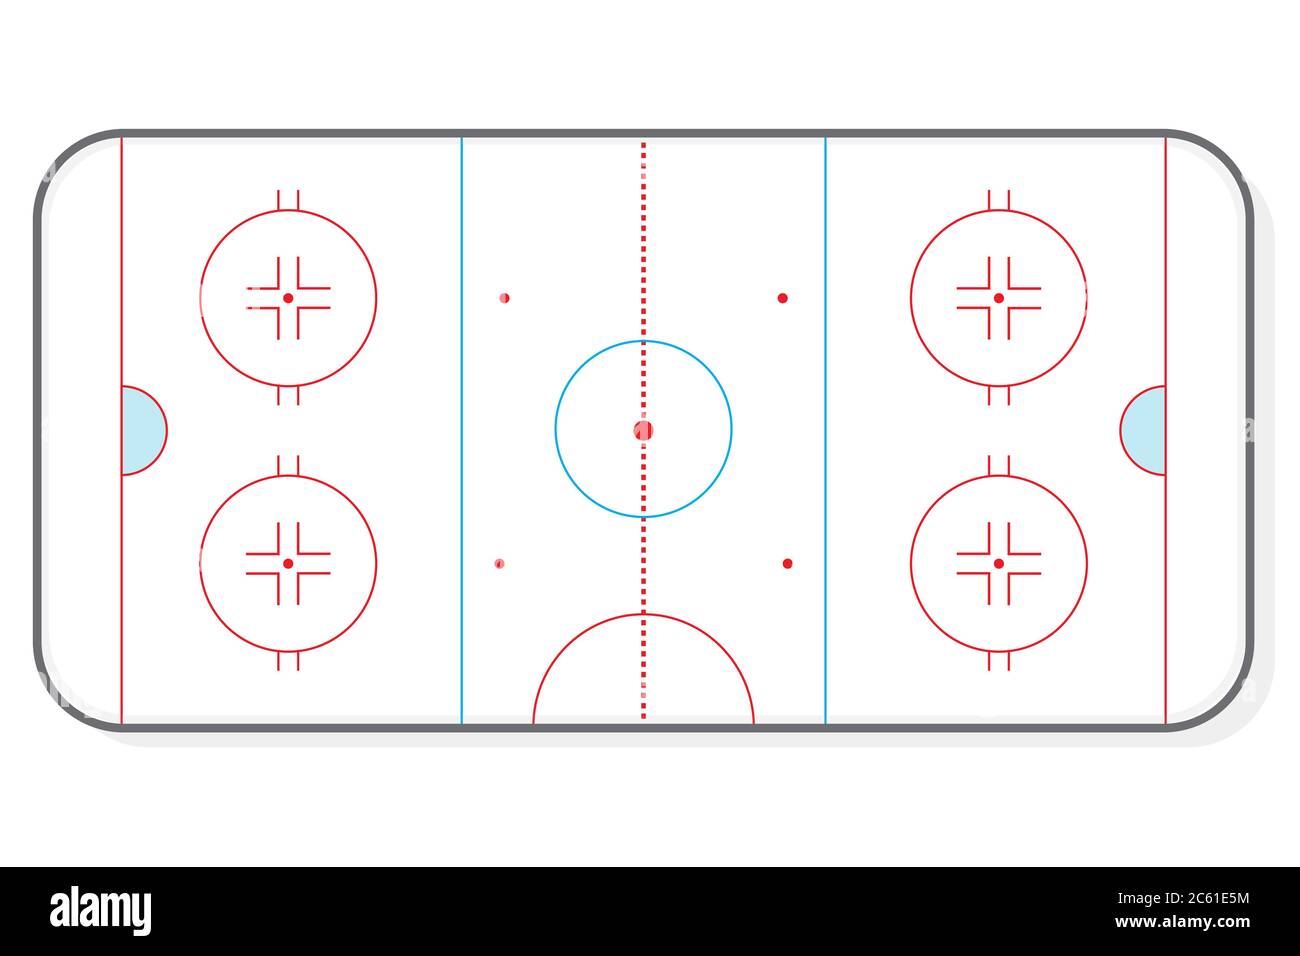 Disposition de fond de l'illustration vectorielle de la patinoire de hockey Illustration de Vecteur